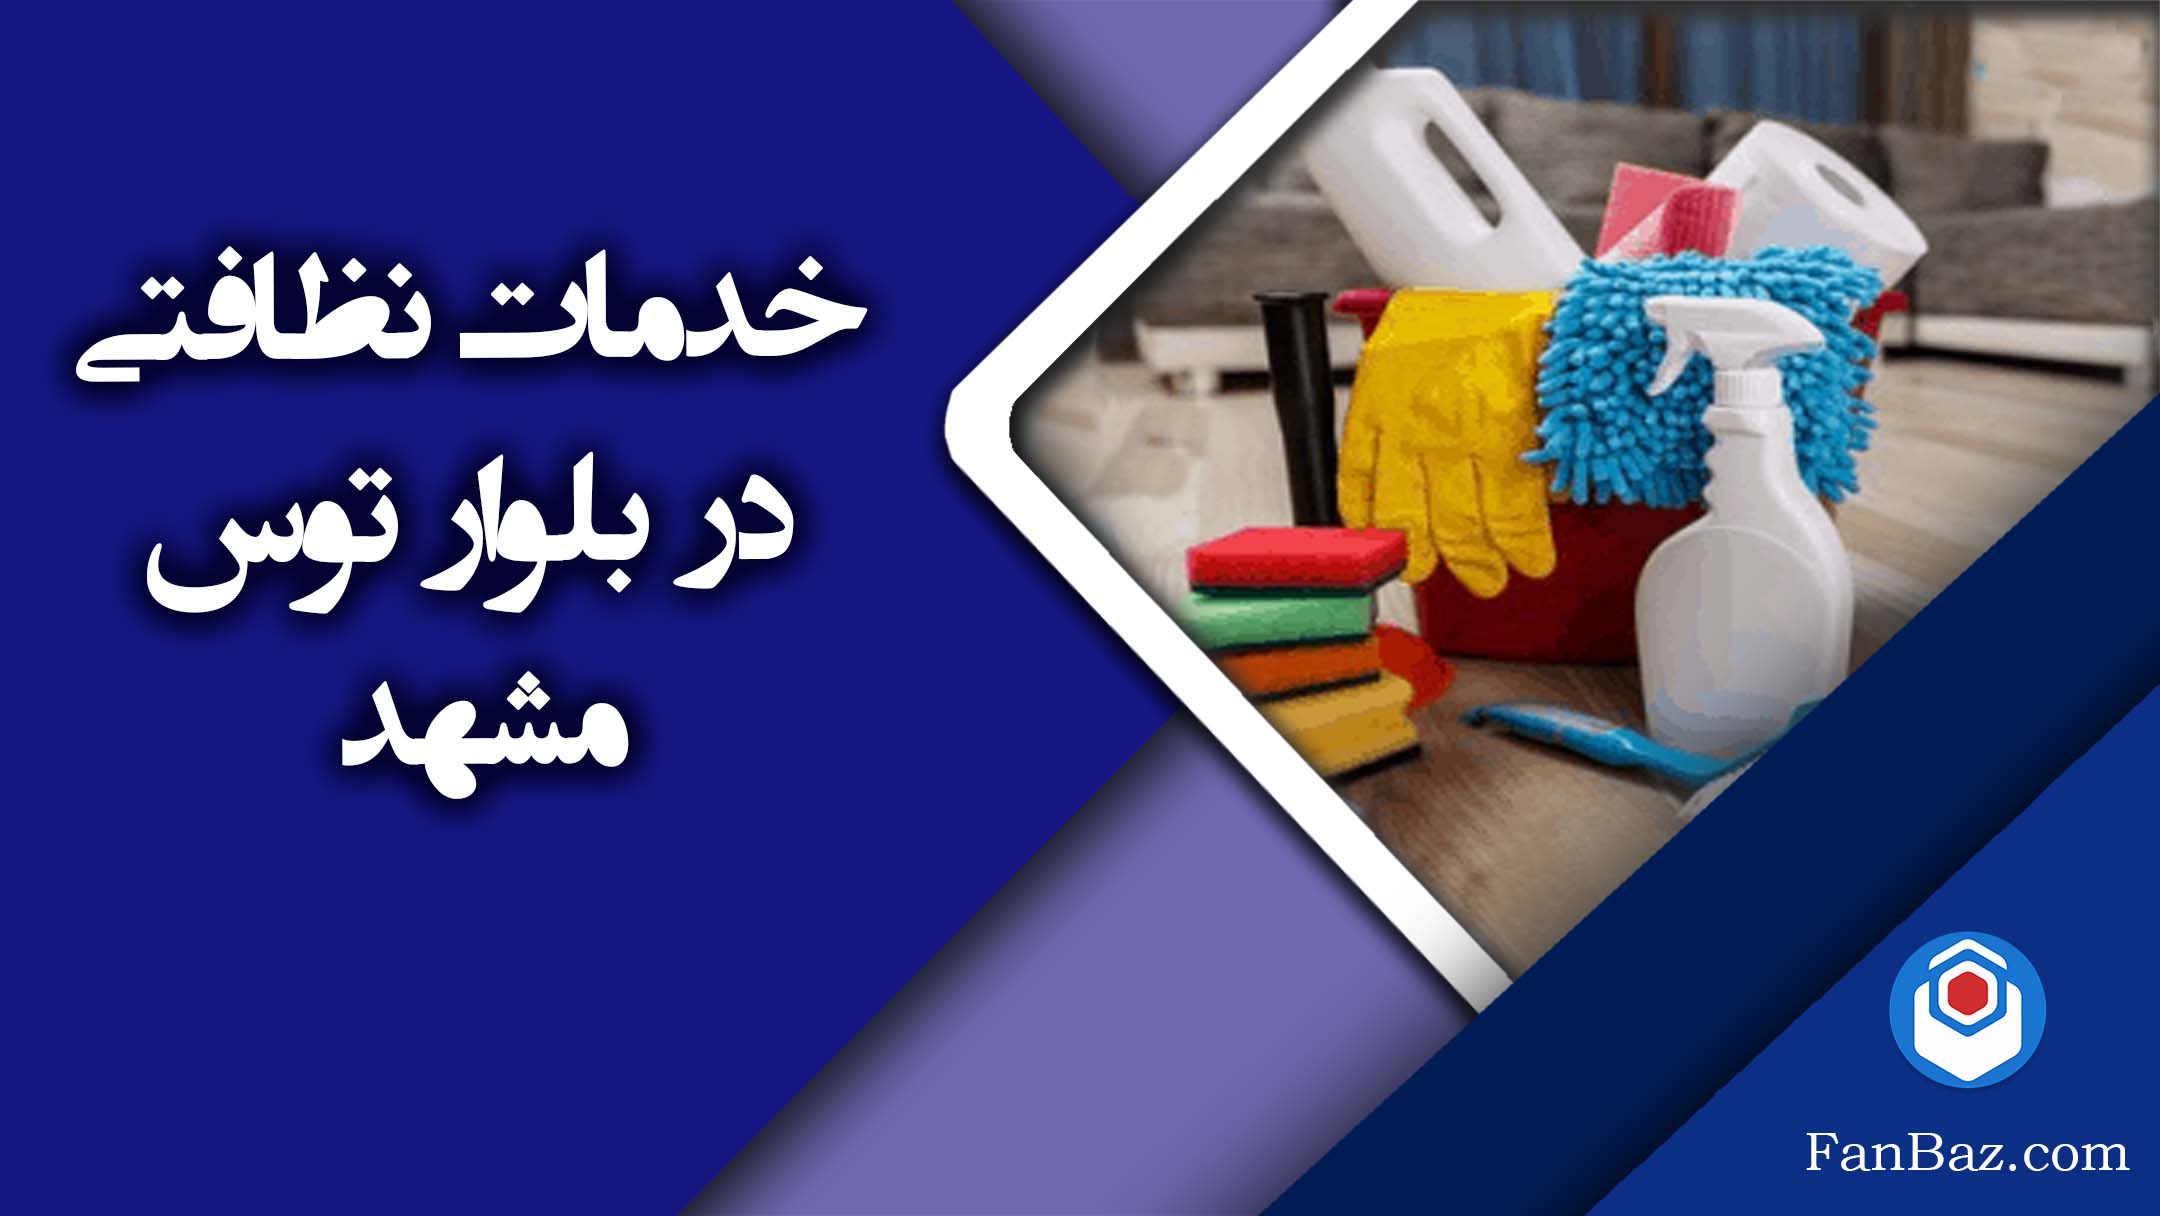 خدمات نظافتی فن باز در بلوار توس مشهد